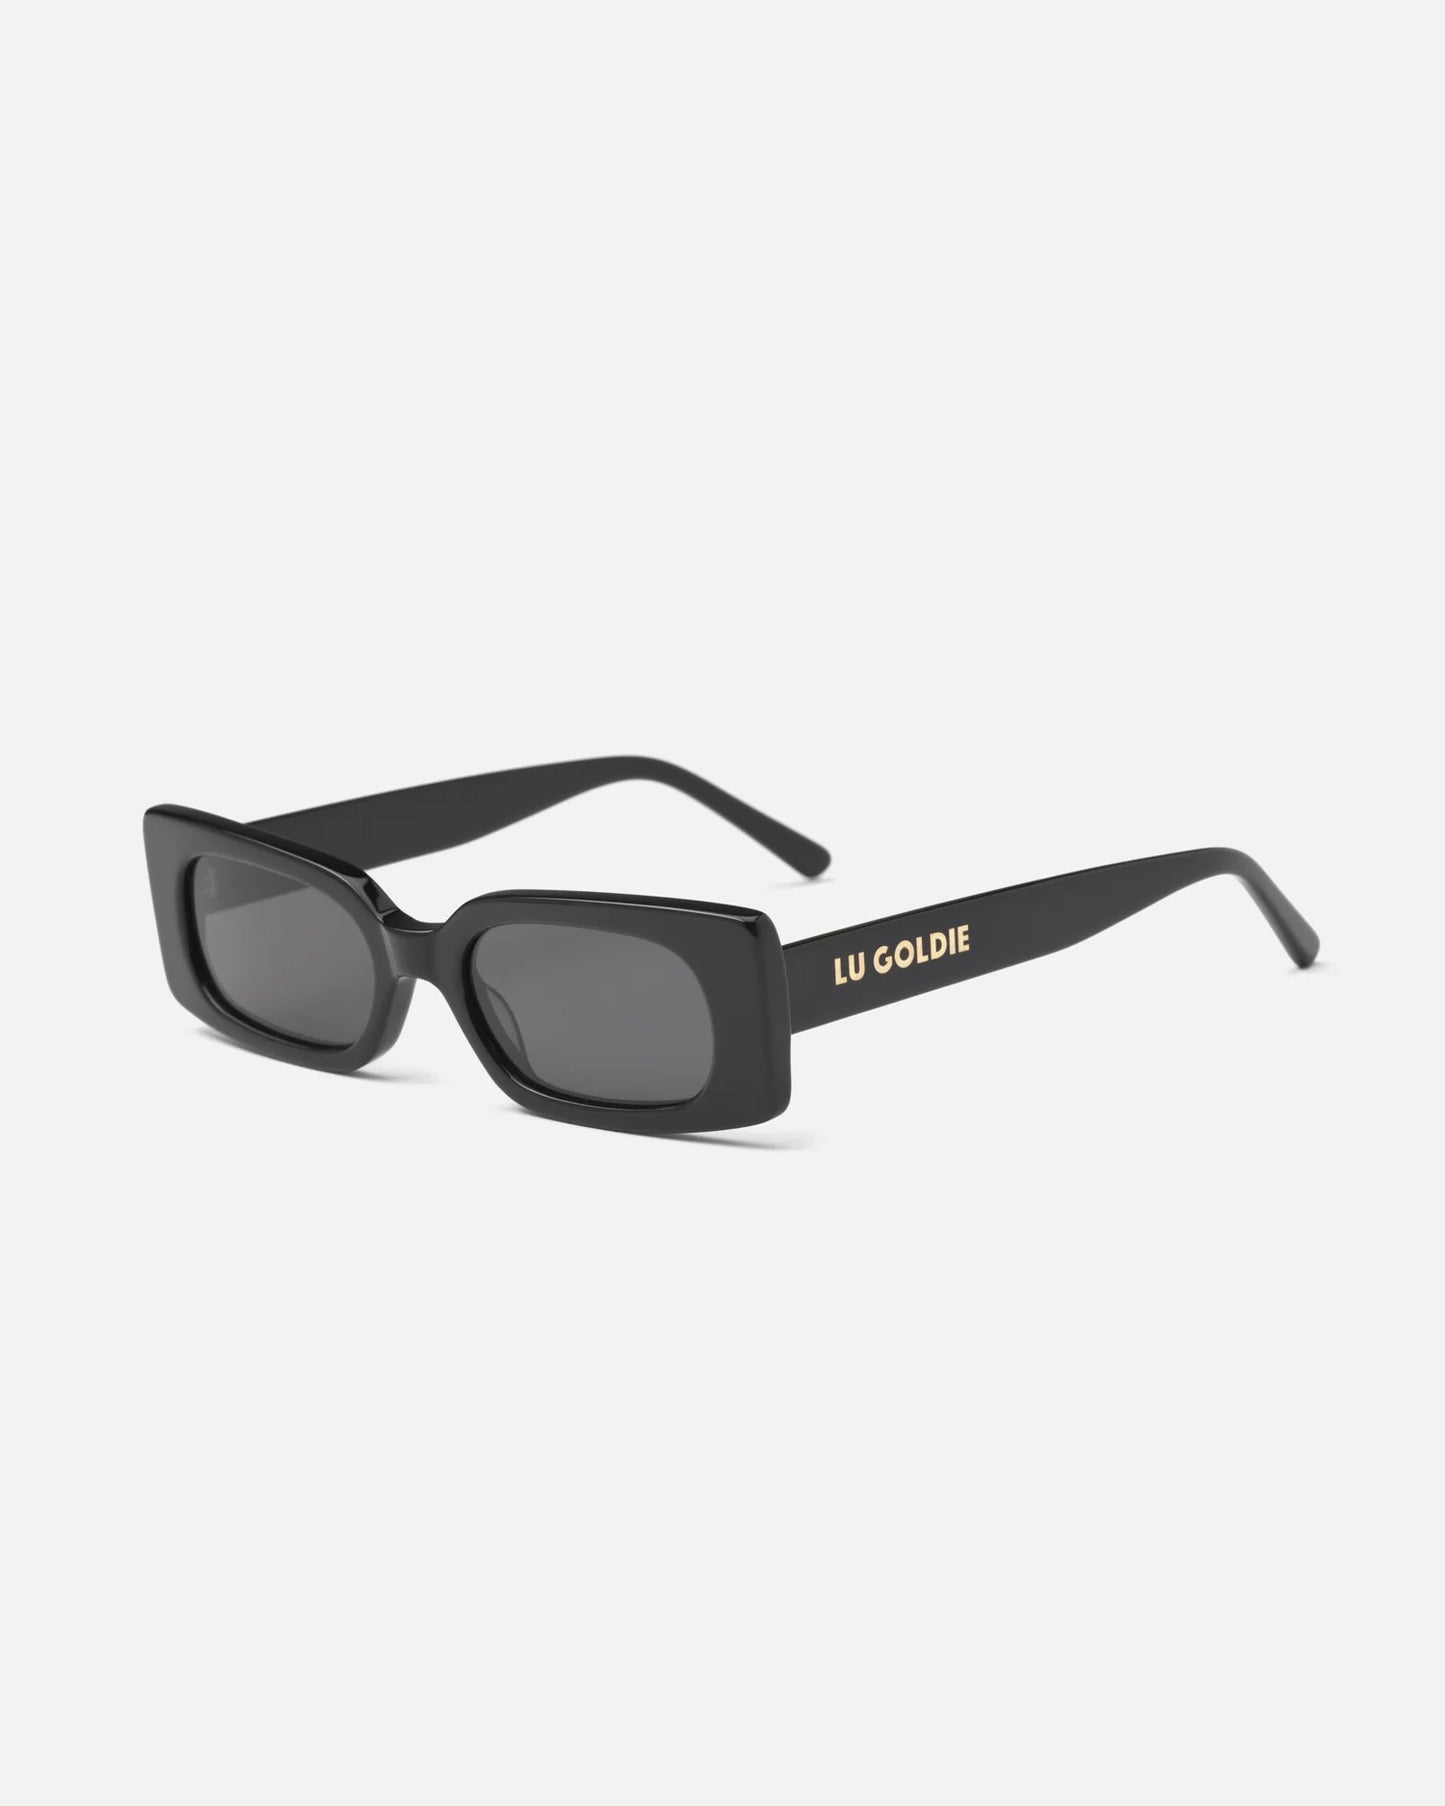 Salomé - Black Sunglasses